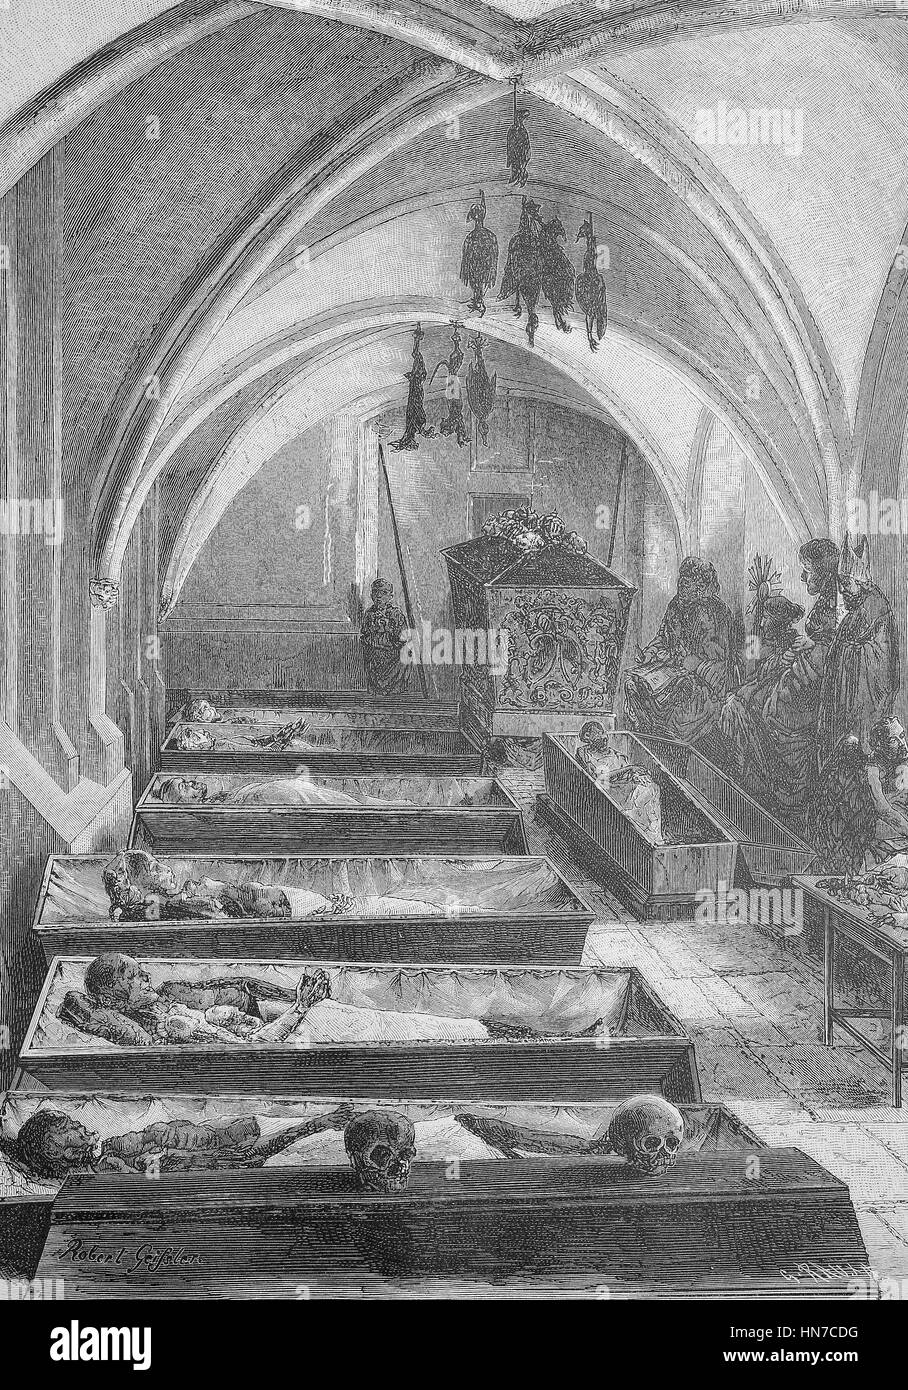 Les momies dans le sous-sol de la cathédrale de Brême, Allemagne, appelé Bleikeller Bleikeller, der im Dom von Bremen mit Mumien, gravure sur bois à partir de 1885, l'amélioration numérique Banque D'Images